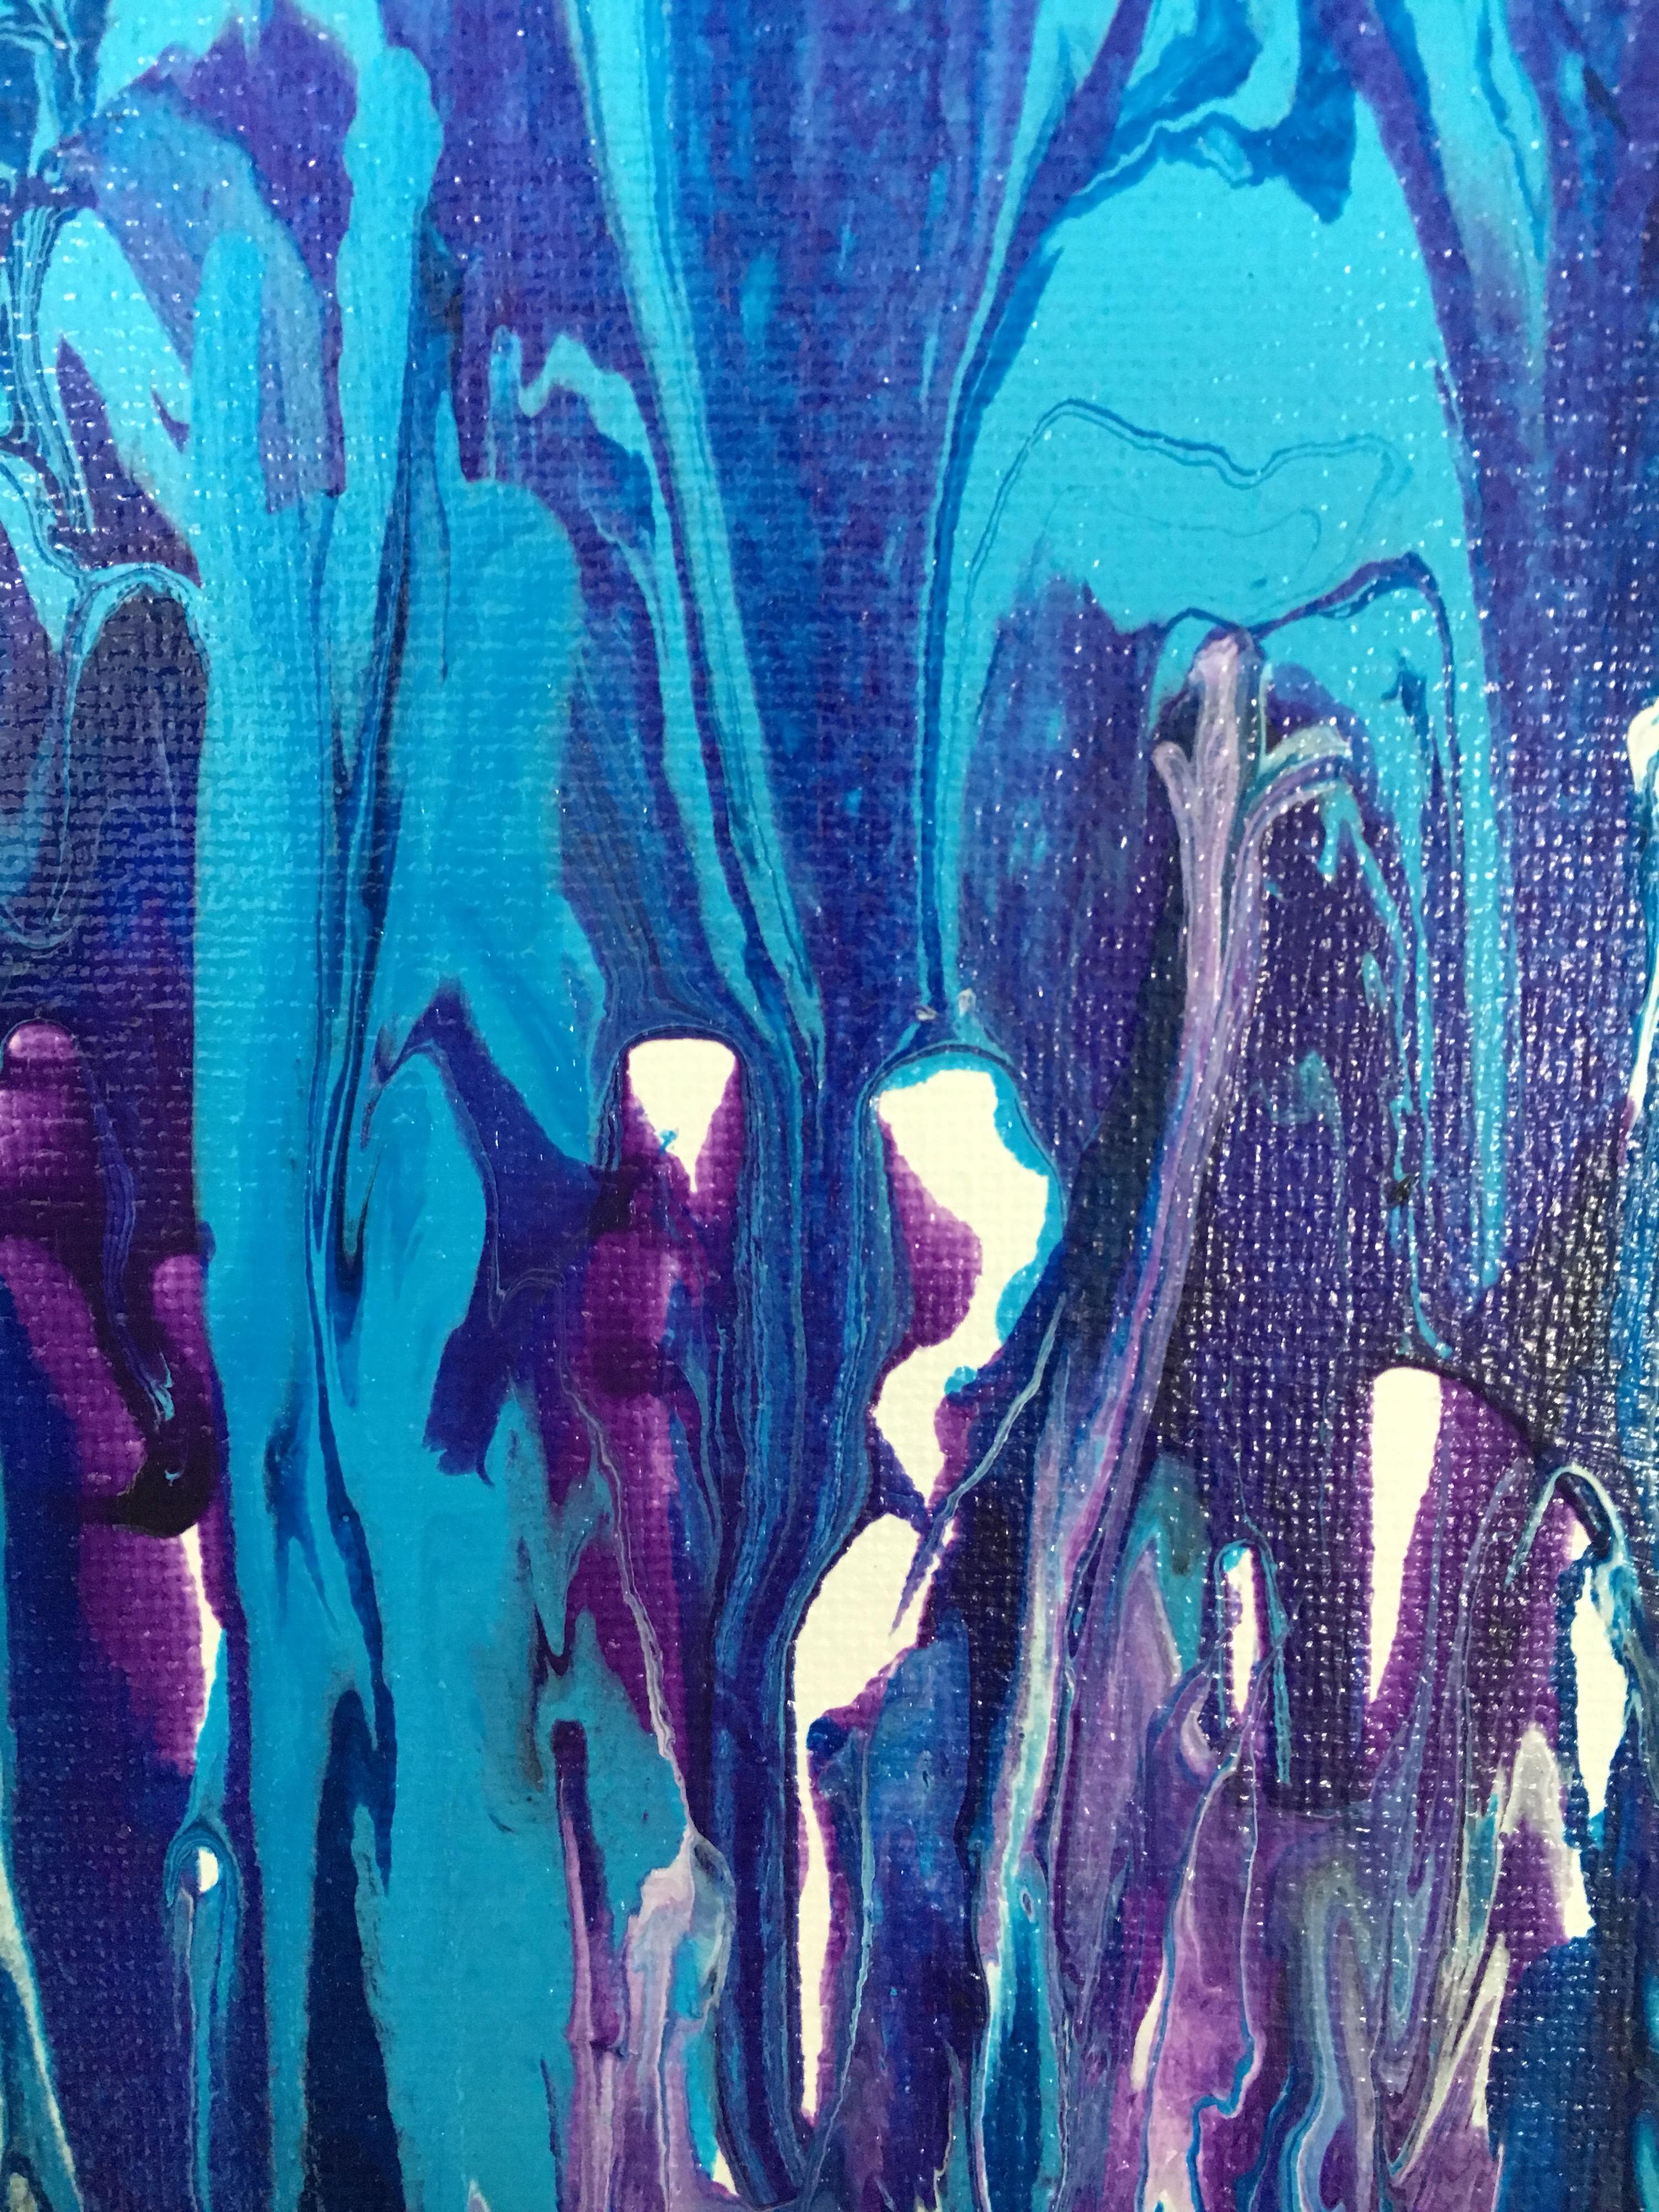 Atemberaubende Original Öl auf Leinwand abstrakt mit Scharen von blauen Wellen von der Künstlerin Arlene Carr.
Unten signiert. Der Rahmen scheint neu zu sein.